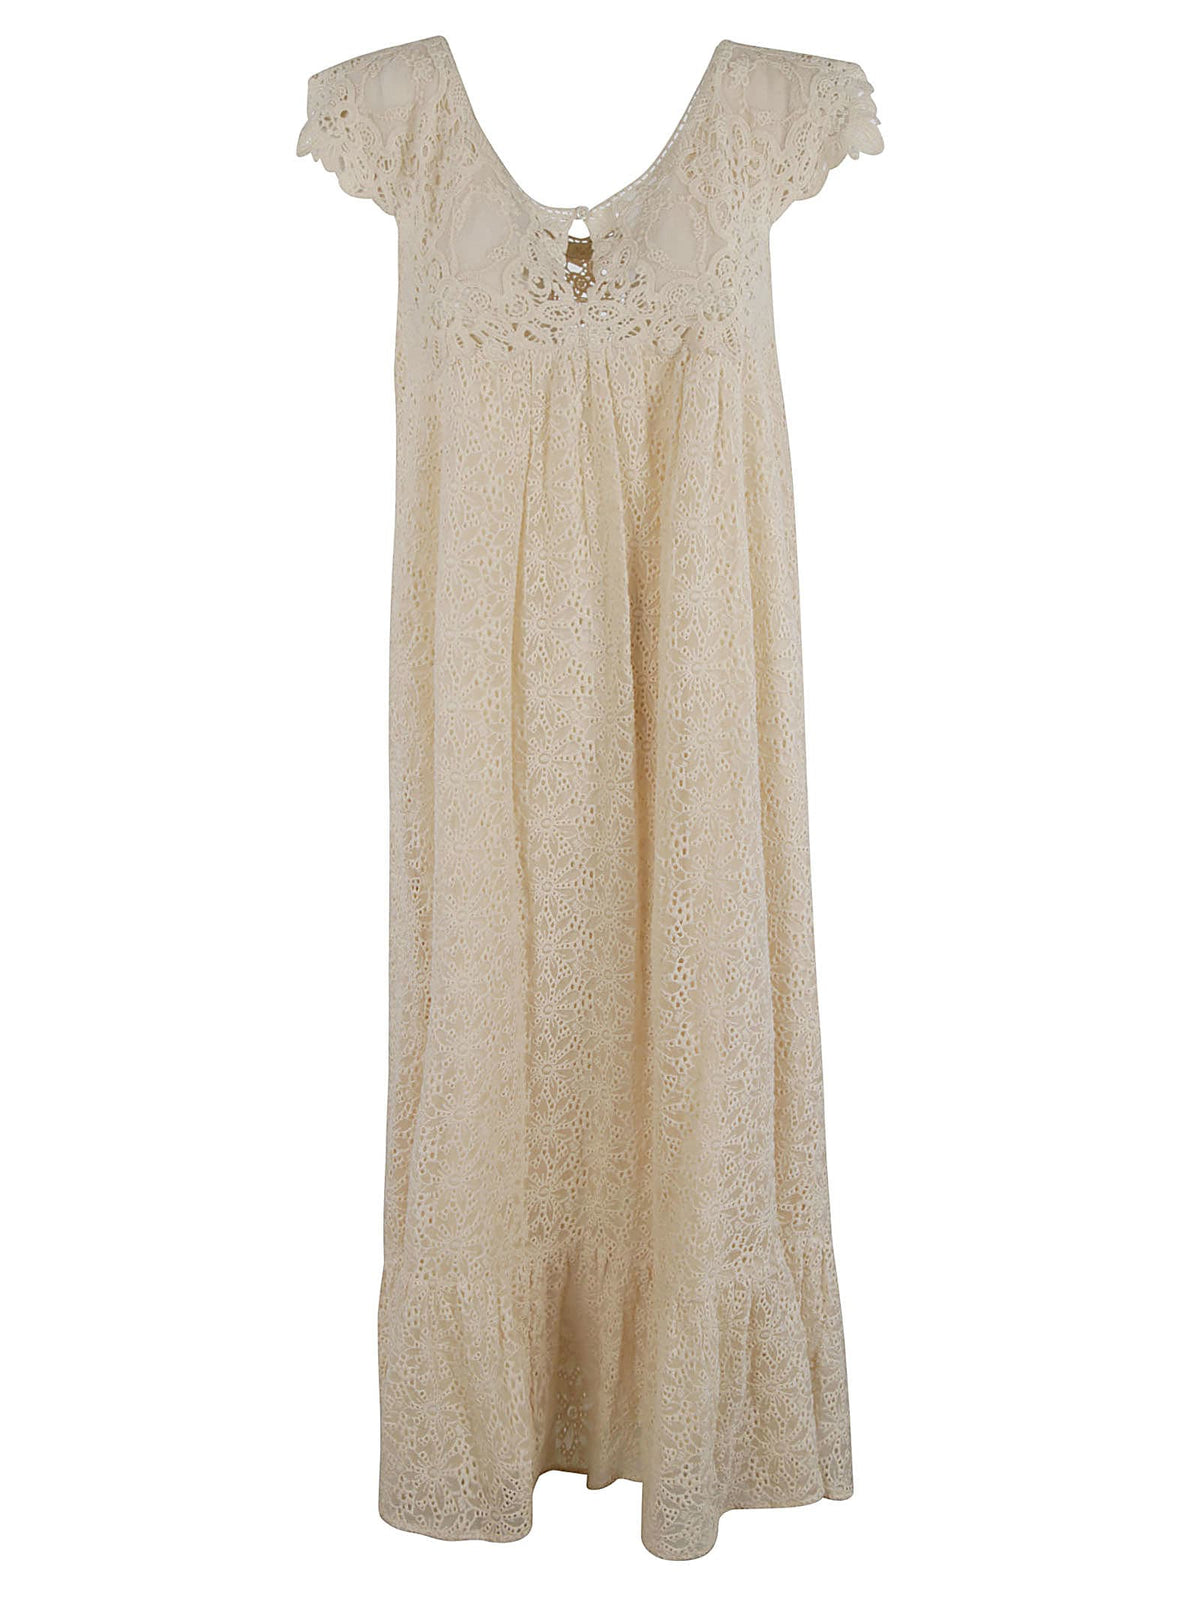 Juliet Dress - size 36